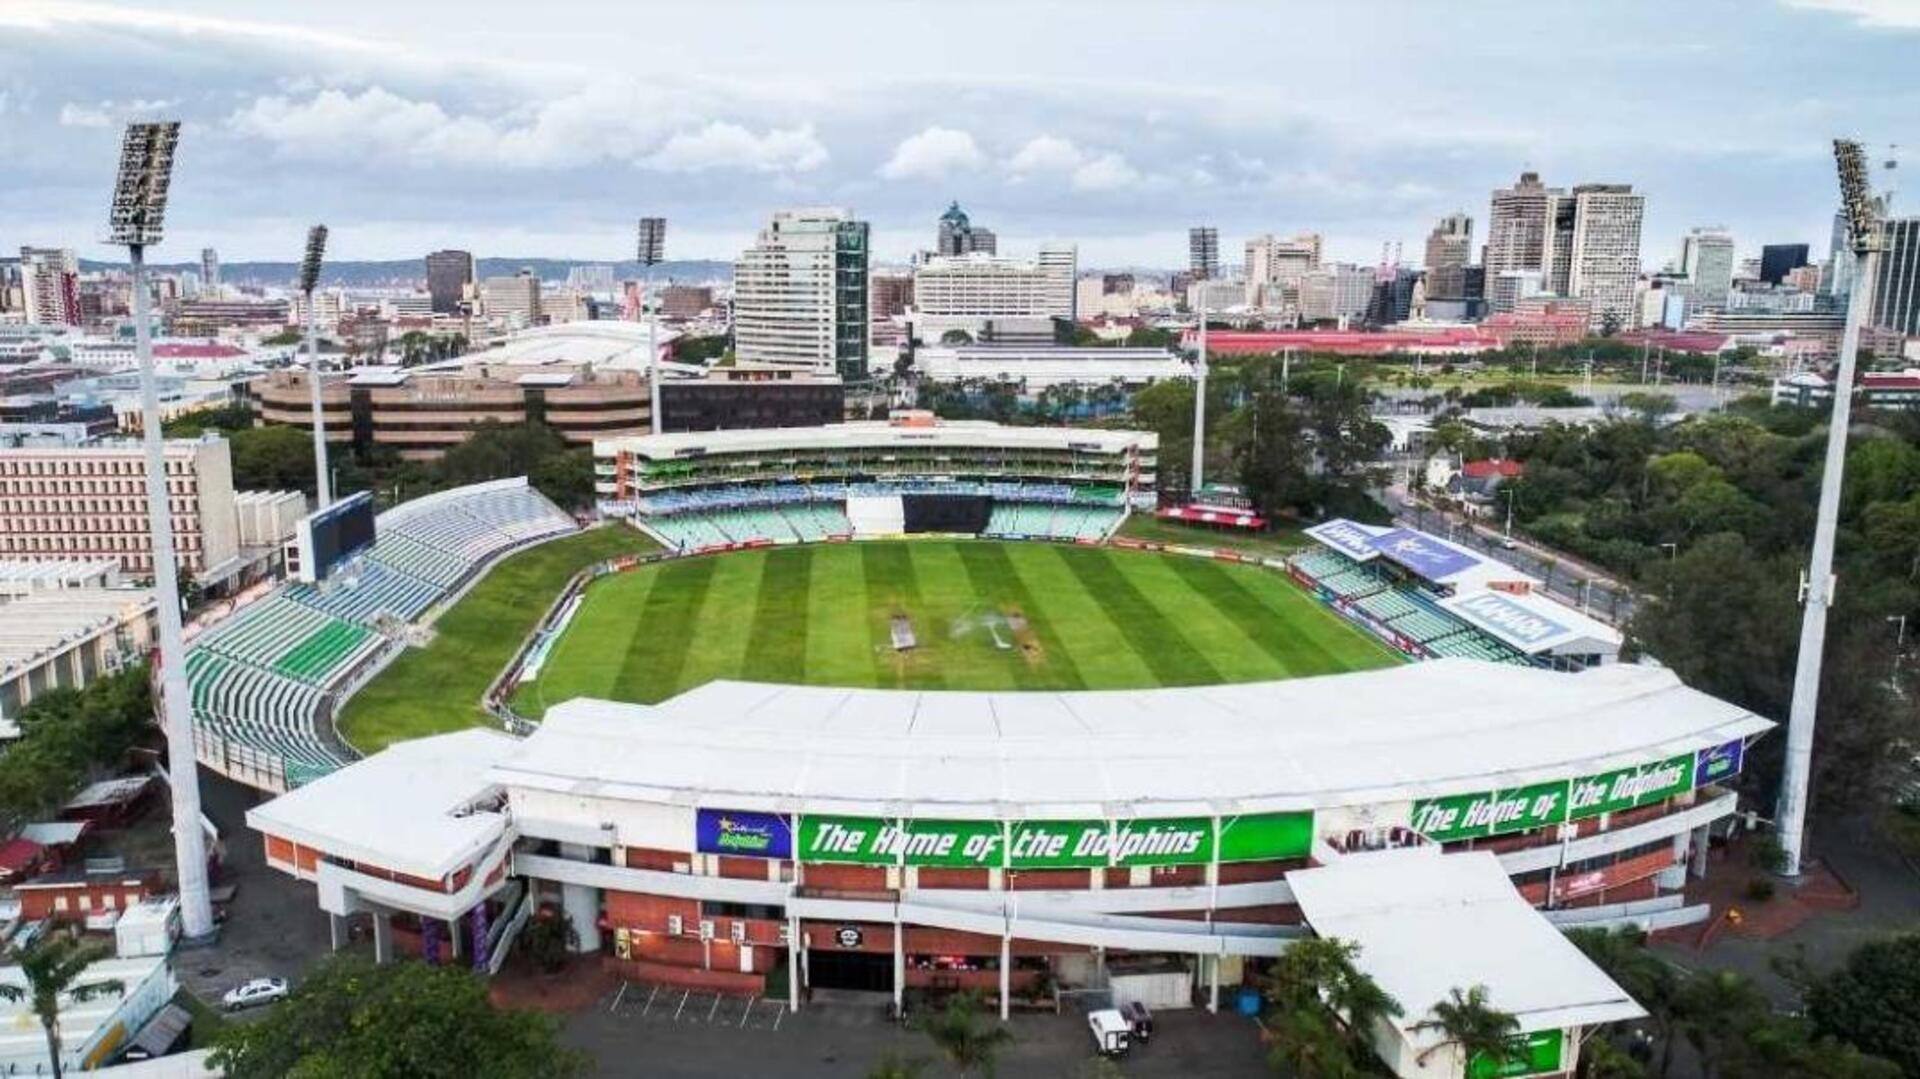 दक्षिण अफ्रीका बनाम भारत, पहला टी-20: किंग्समीड स्टेडियम की पिच रिपोर्ट और उससे जुड़े रोचक आंकड़े